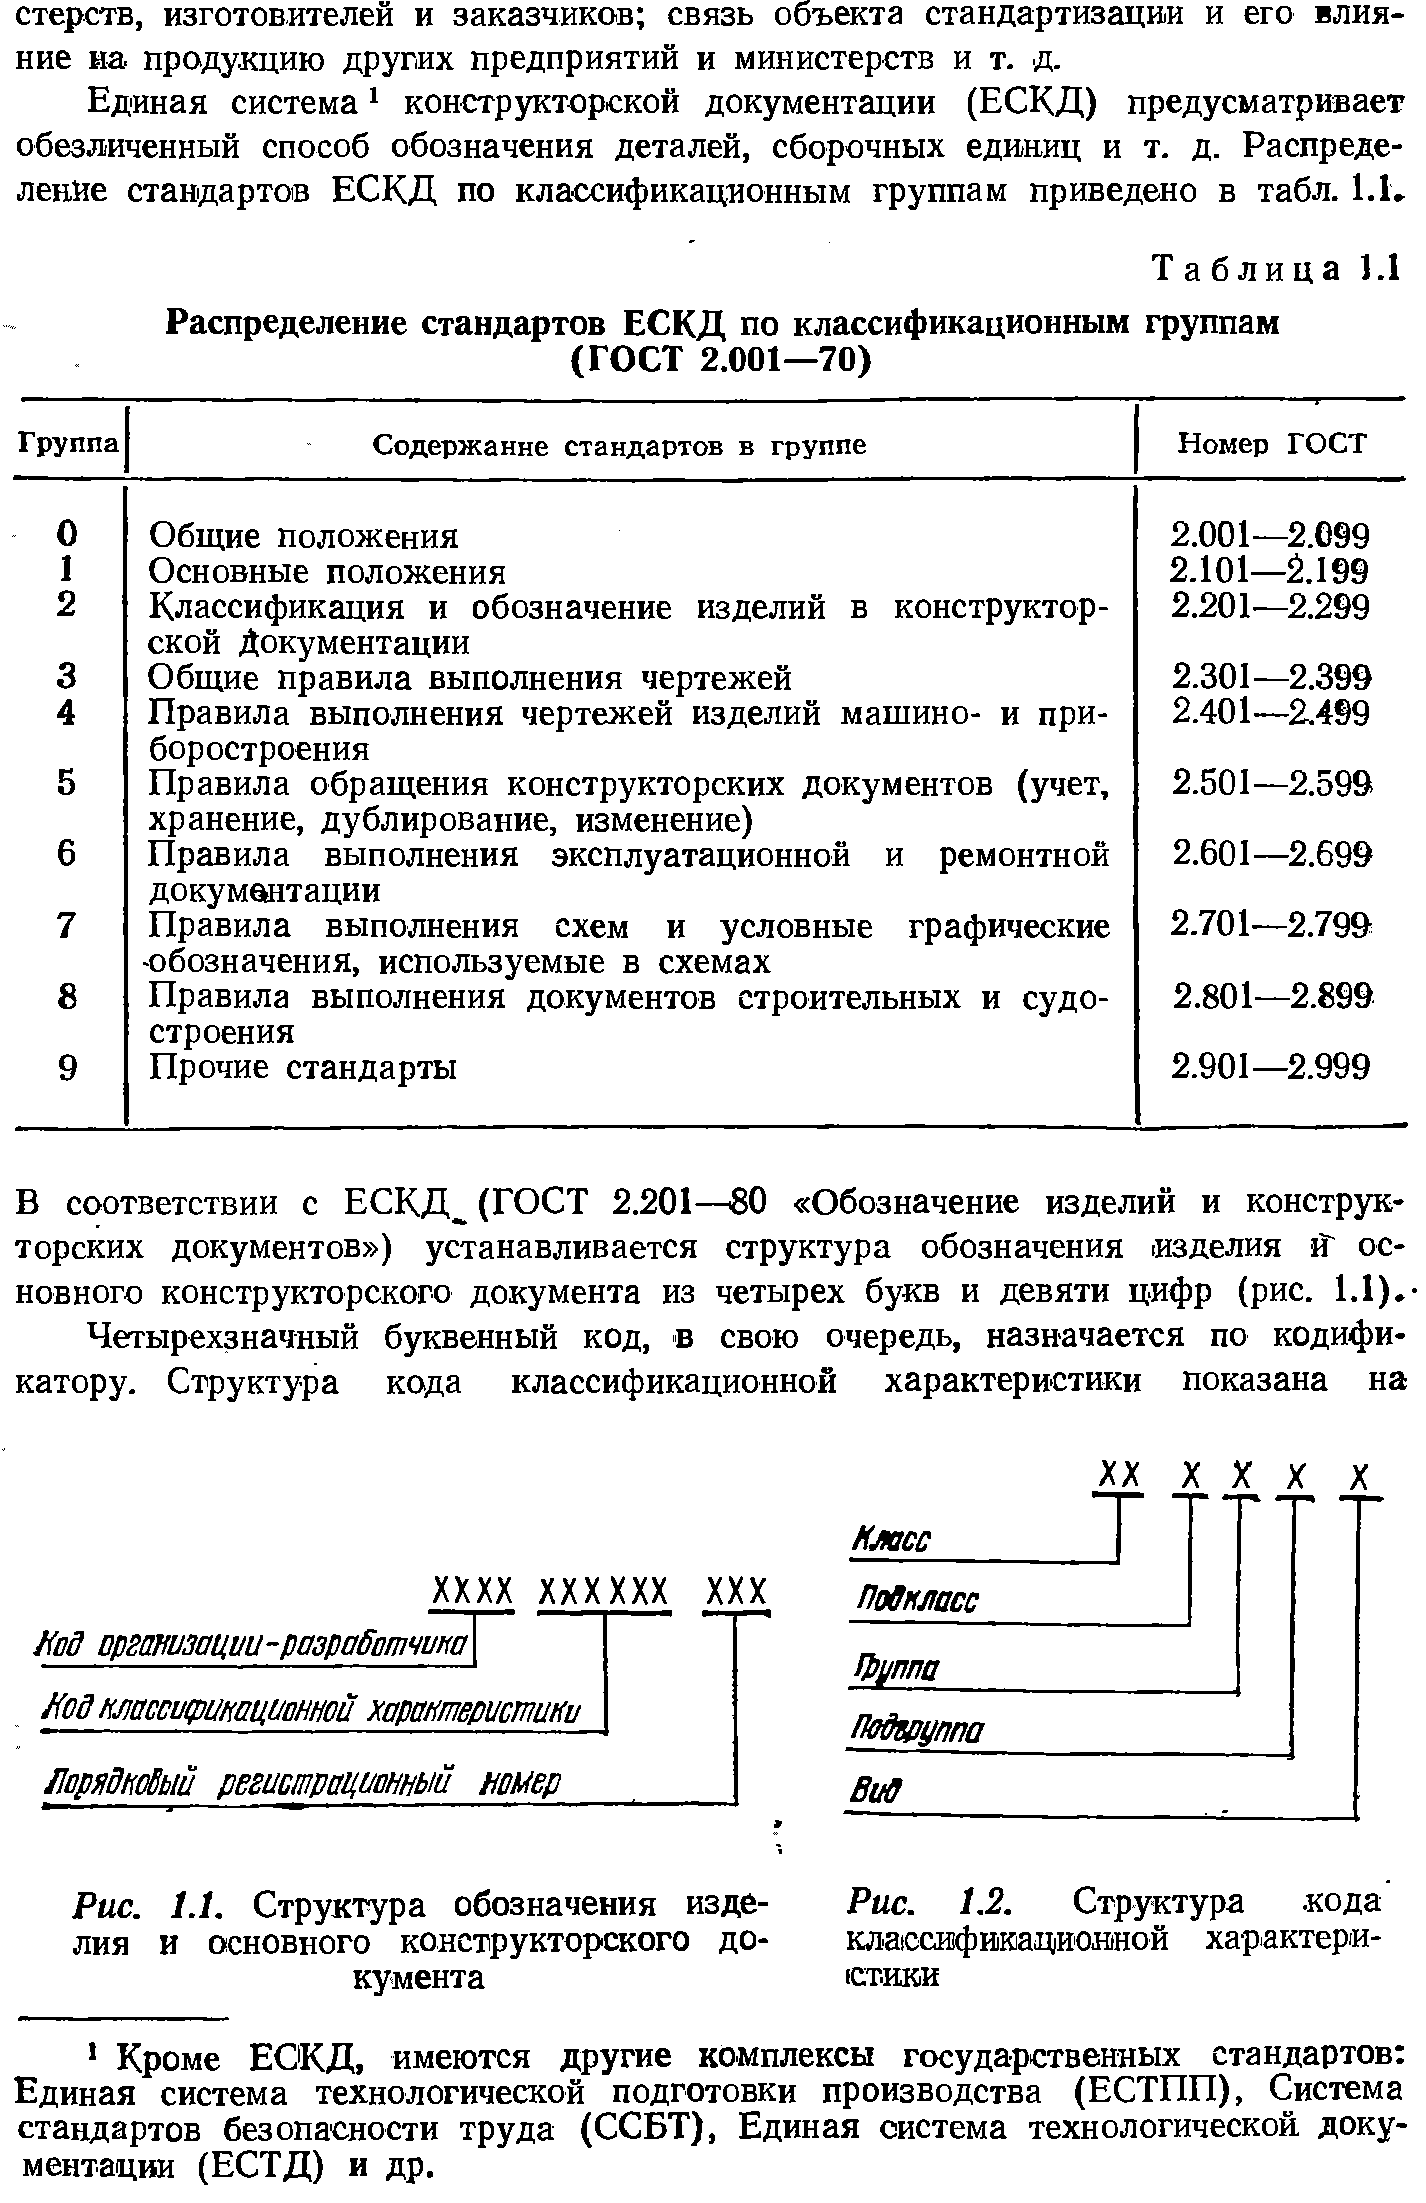 Рис. 1.1. Структура обозначения изделия и основного конструкторского документа
